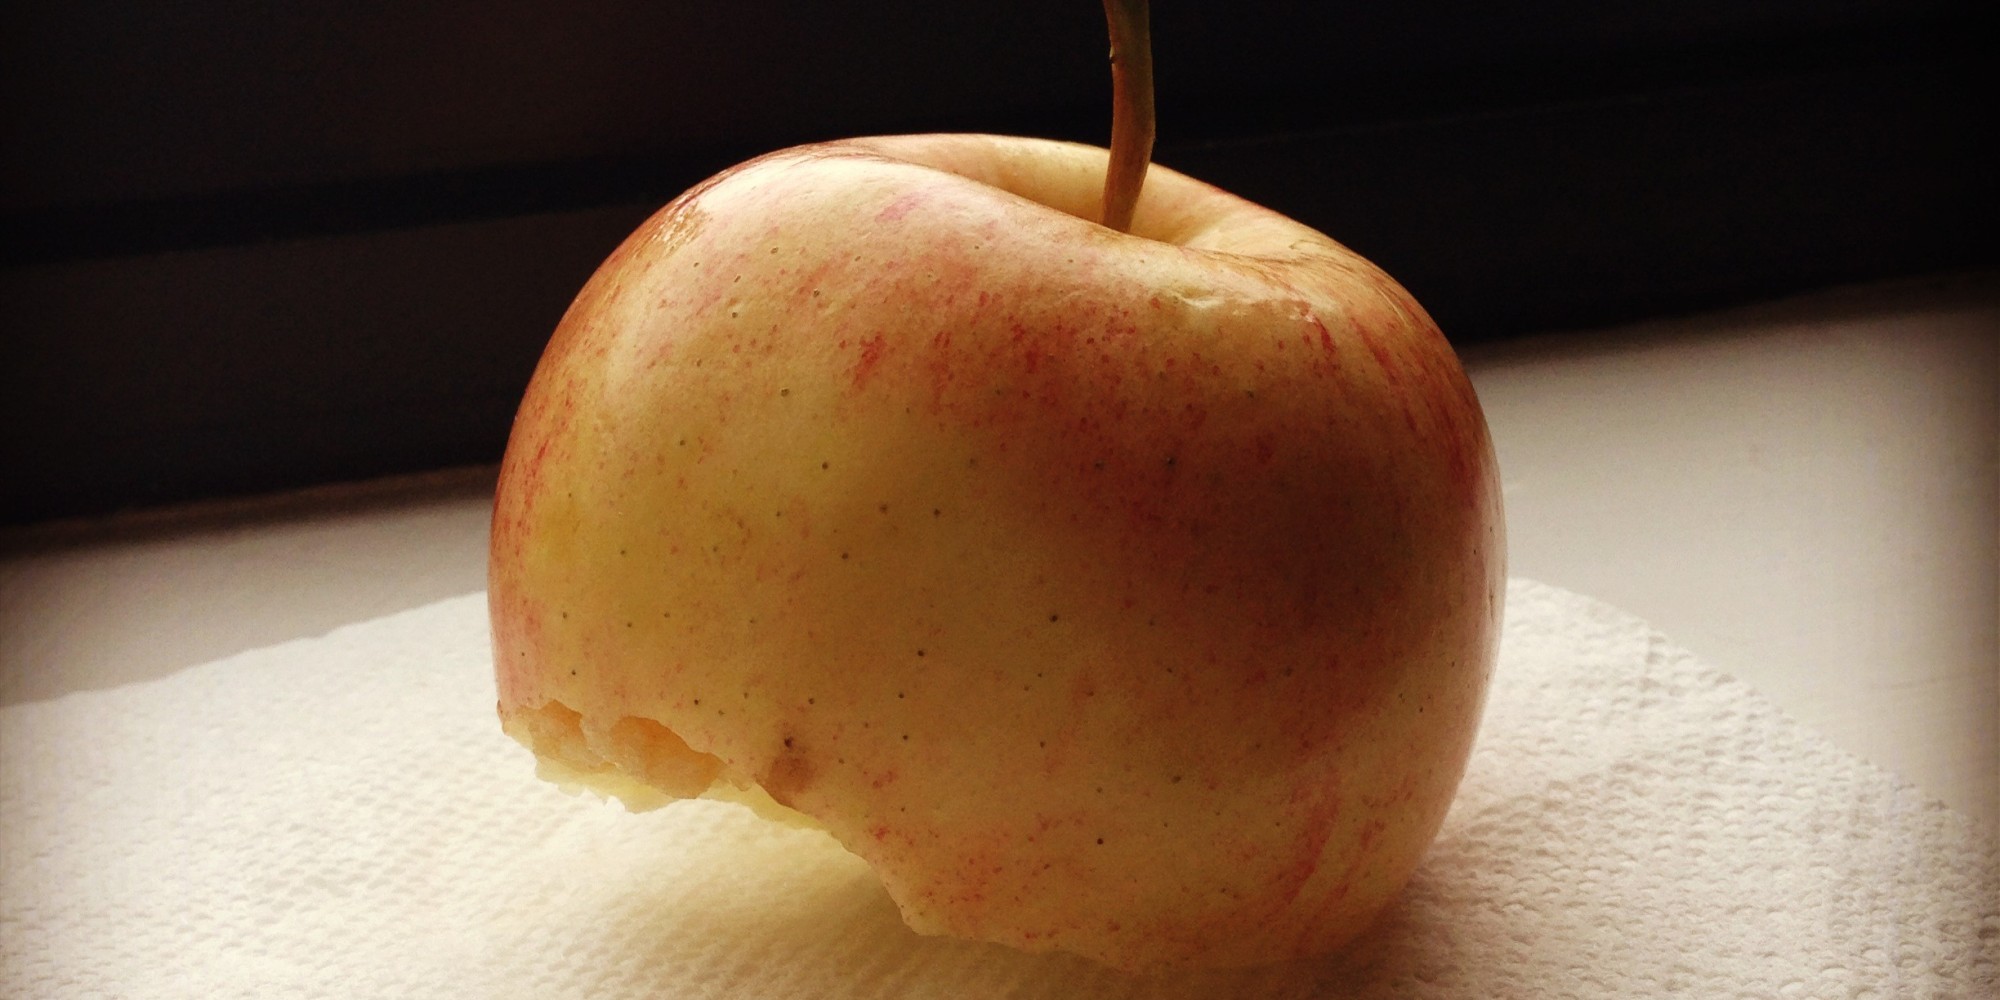 На 14 яблонь. Четырнадцатое яблоко. Побурение яблока вокруг плодоножки. 14 Яблок. Apple to eat.